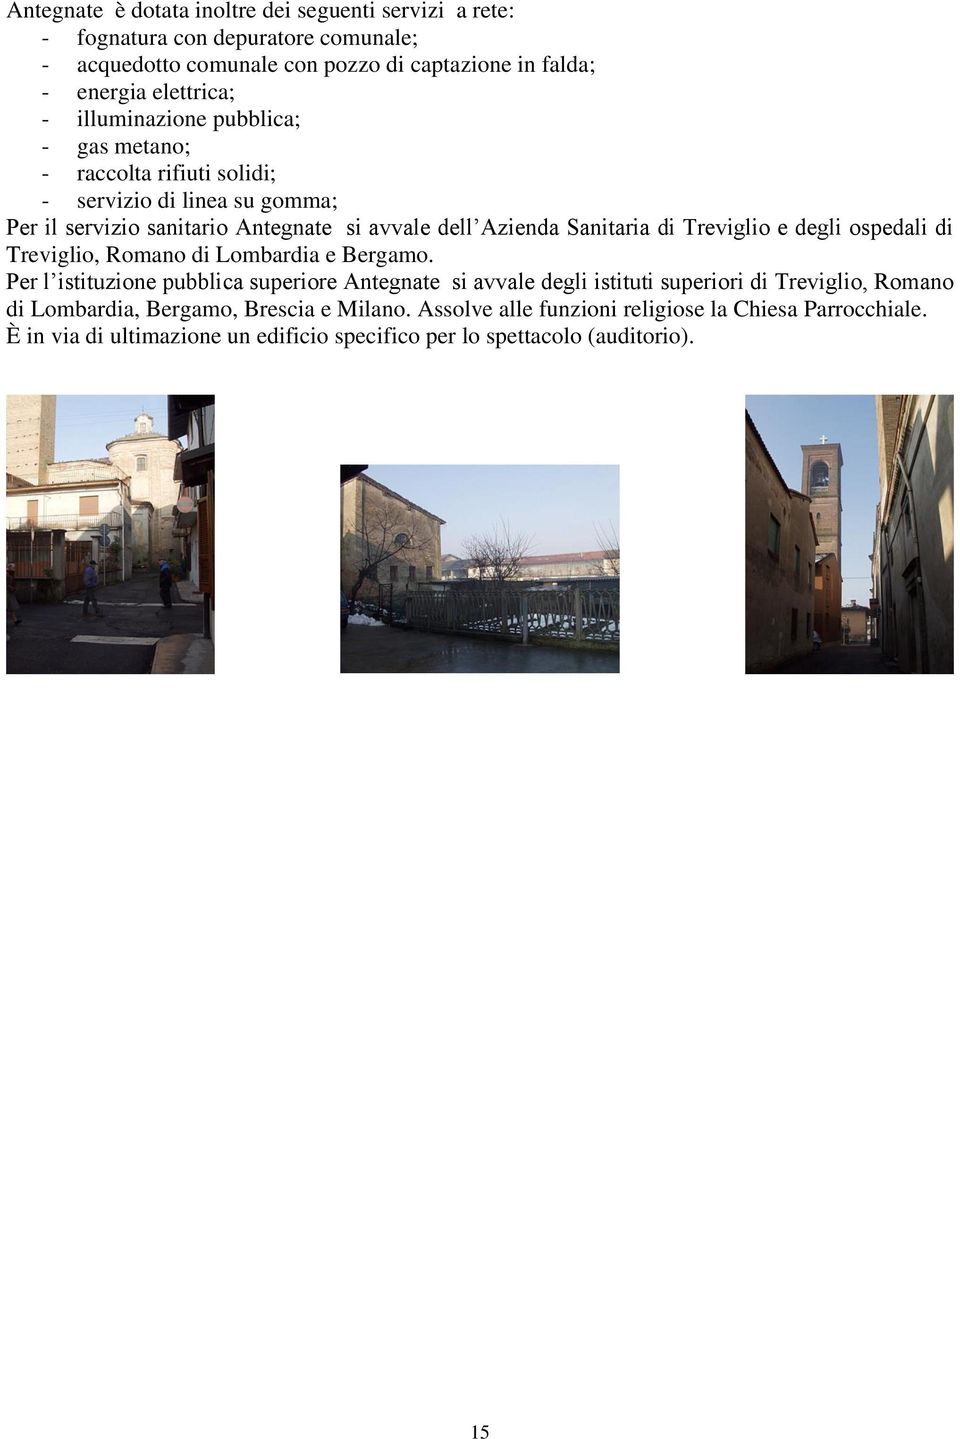 Treviglio e degli ospedali di Treviglio, Romano di Lombardia e Bergamo.